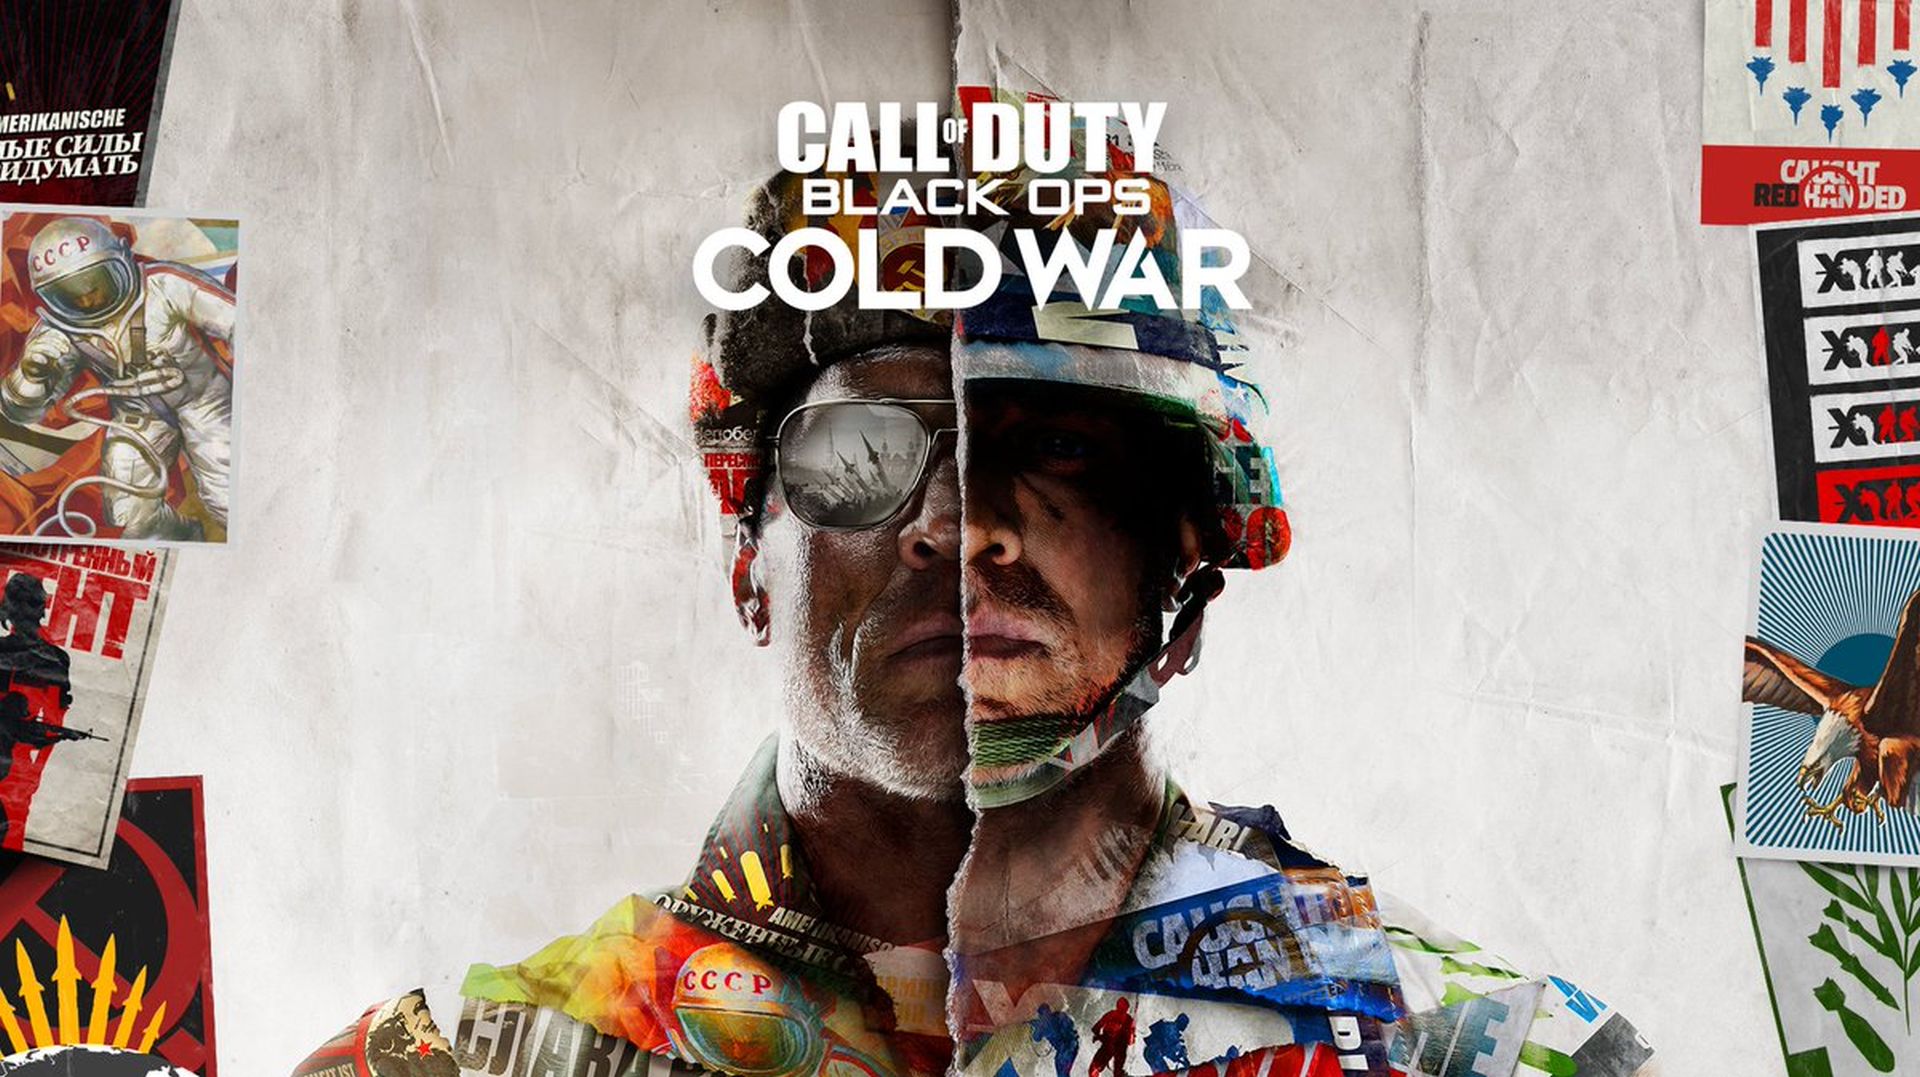 Call Of Duty: Black Ops - Kale Krich wäert fusionéieren an "méi Liewen ootmen" an d'Warzone